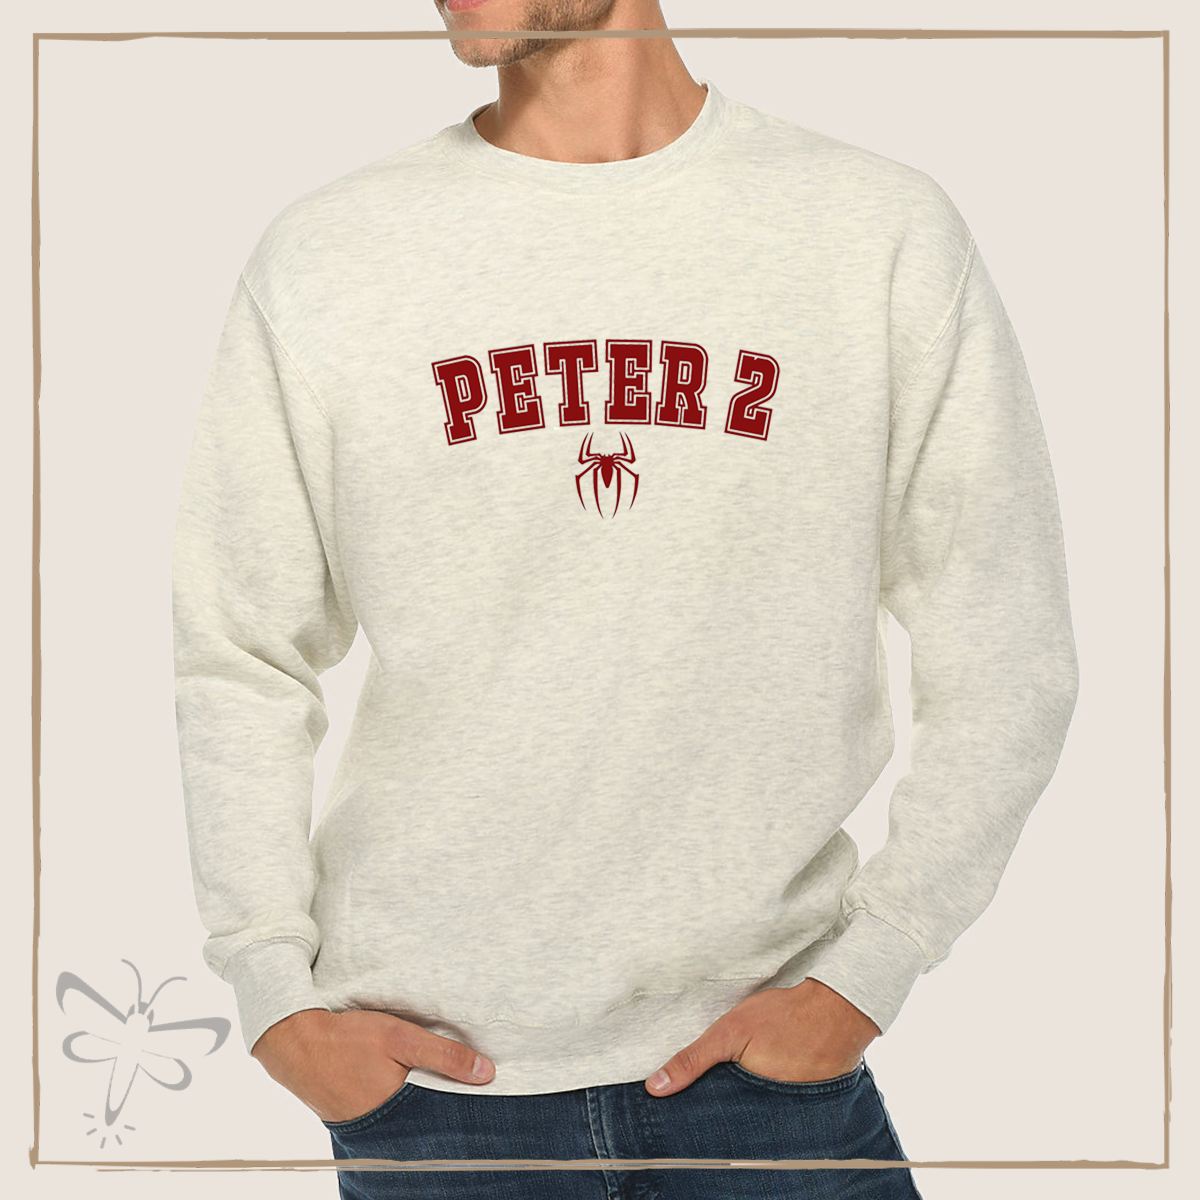 The Peters Crewnecks Xs / Peter 2 Ash Grey Crewneck Sweater